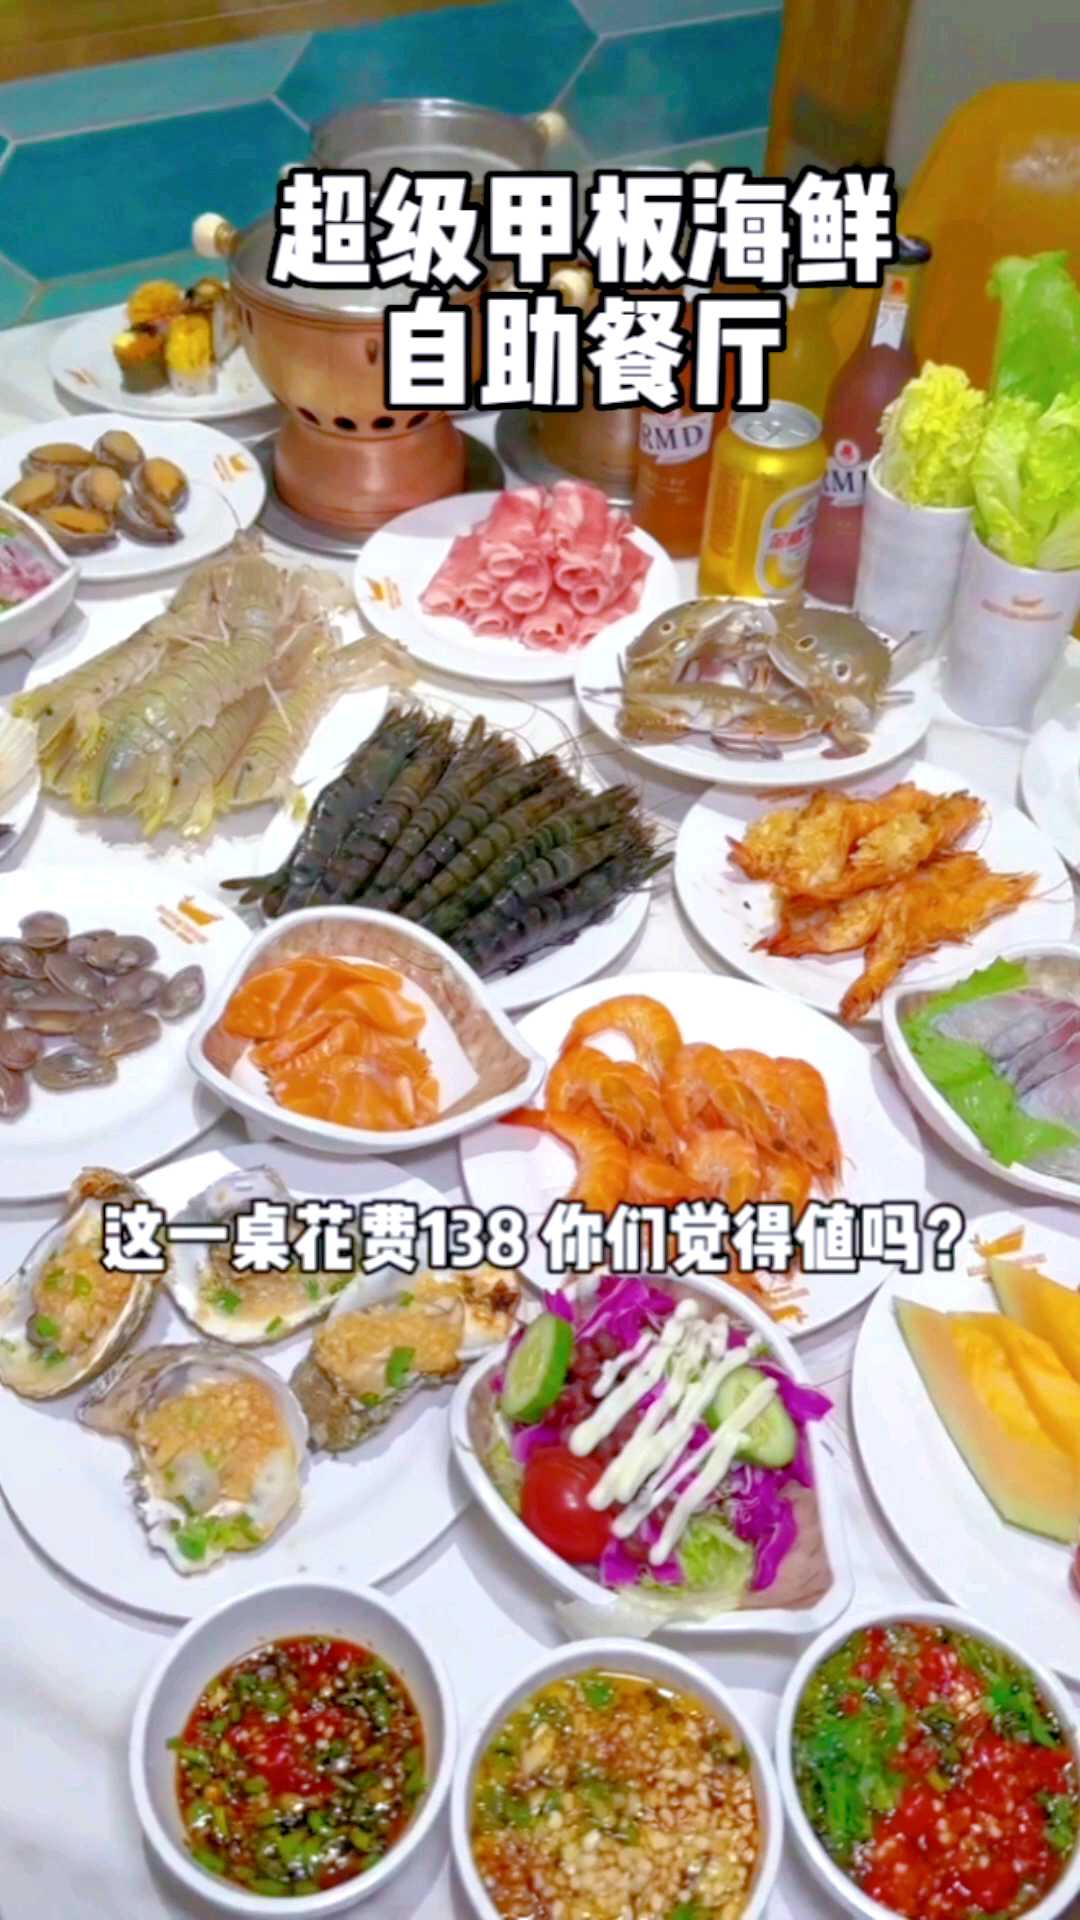 深圳豪华自助餐厅人均只要138就可以吃到扶墙